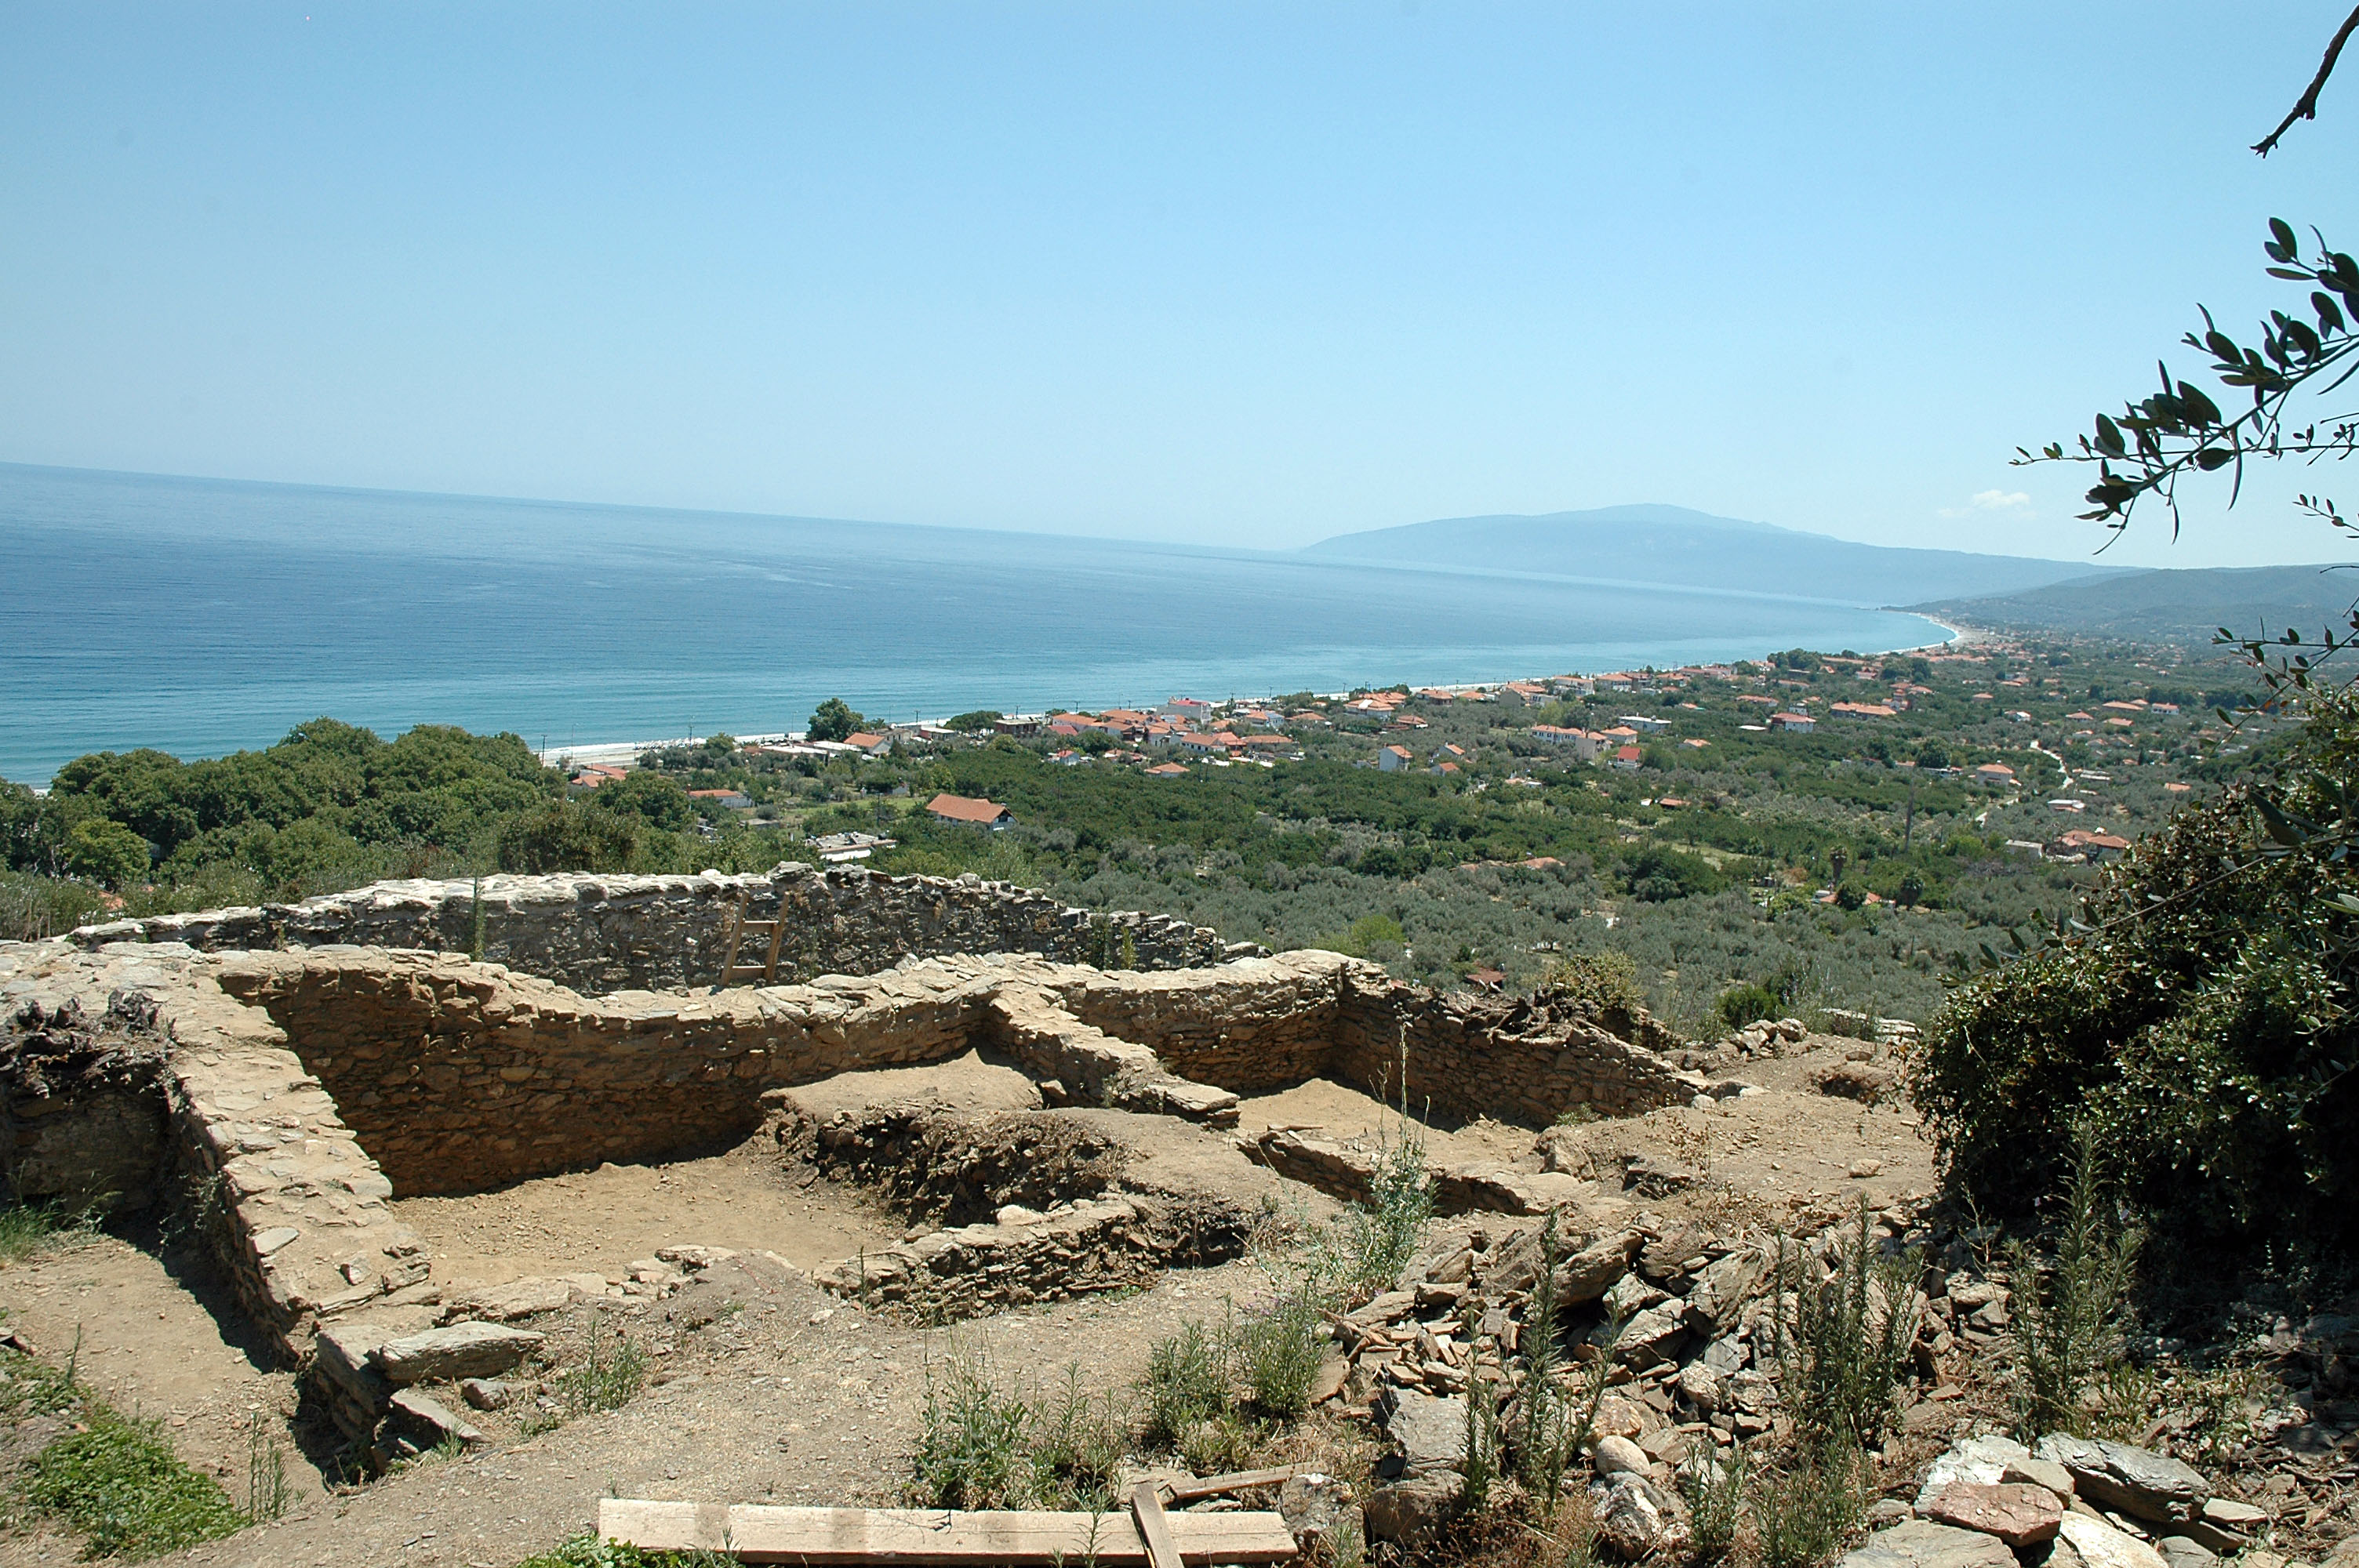 Ιδανικός προορισμός “σκοτεινού τουρισμού” περιοχή της Κρήτης